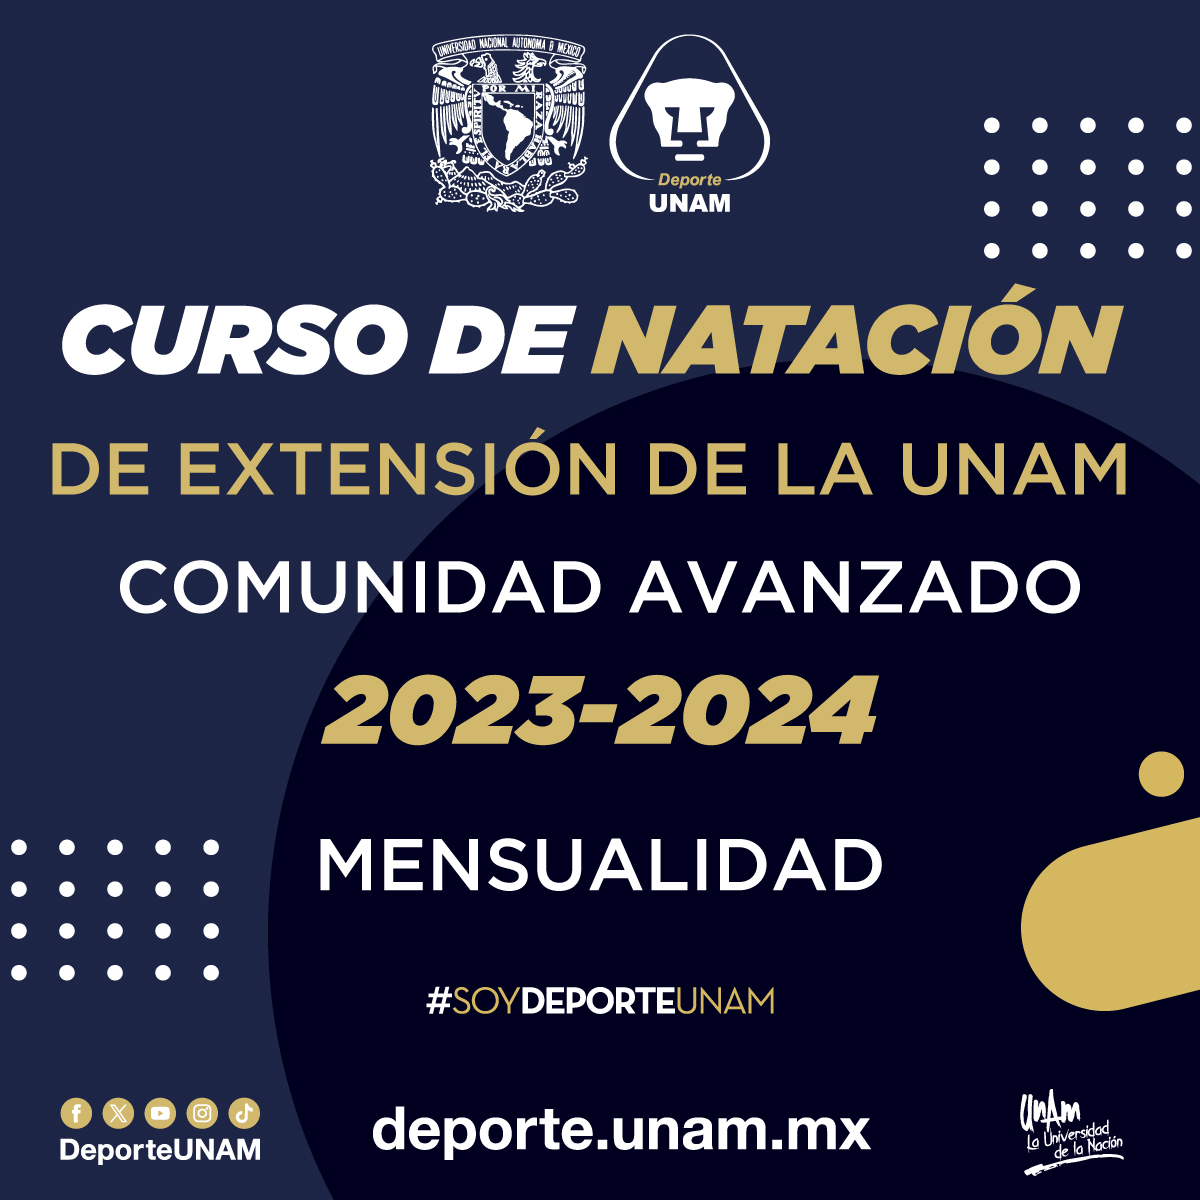 CURSO DE NATACIÓN DE EXTENSIÓN DE LA UNAM 2023 - 2024 COMUNIDAD AVANZADOS MENSUALIDAD